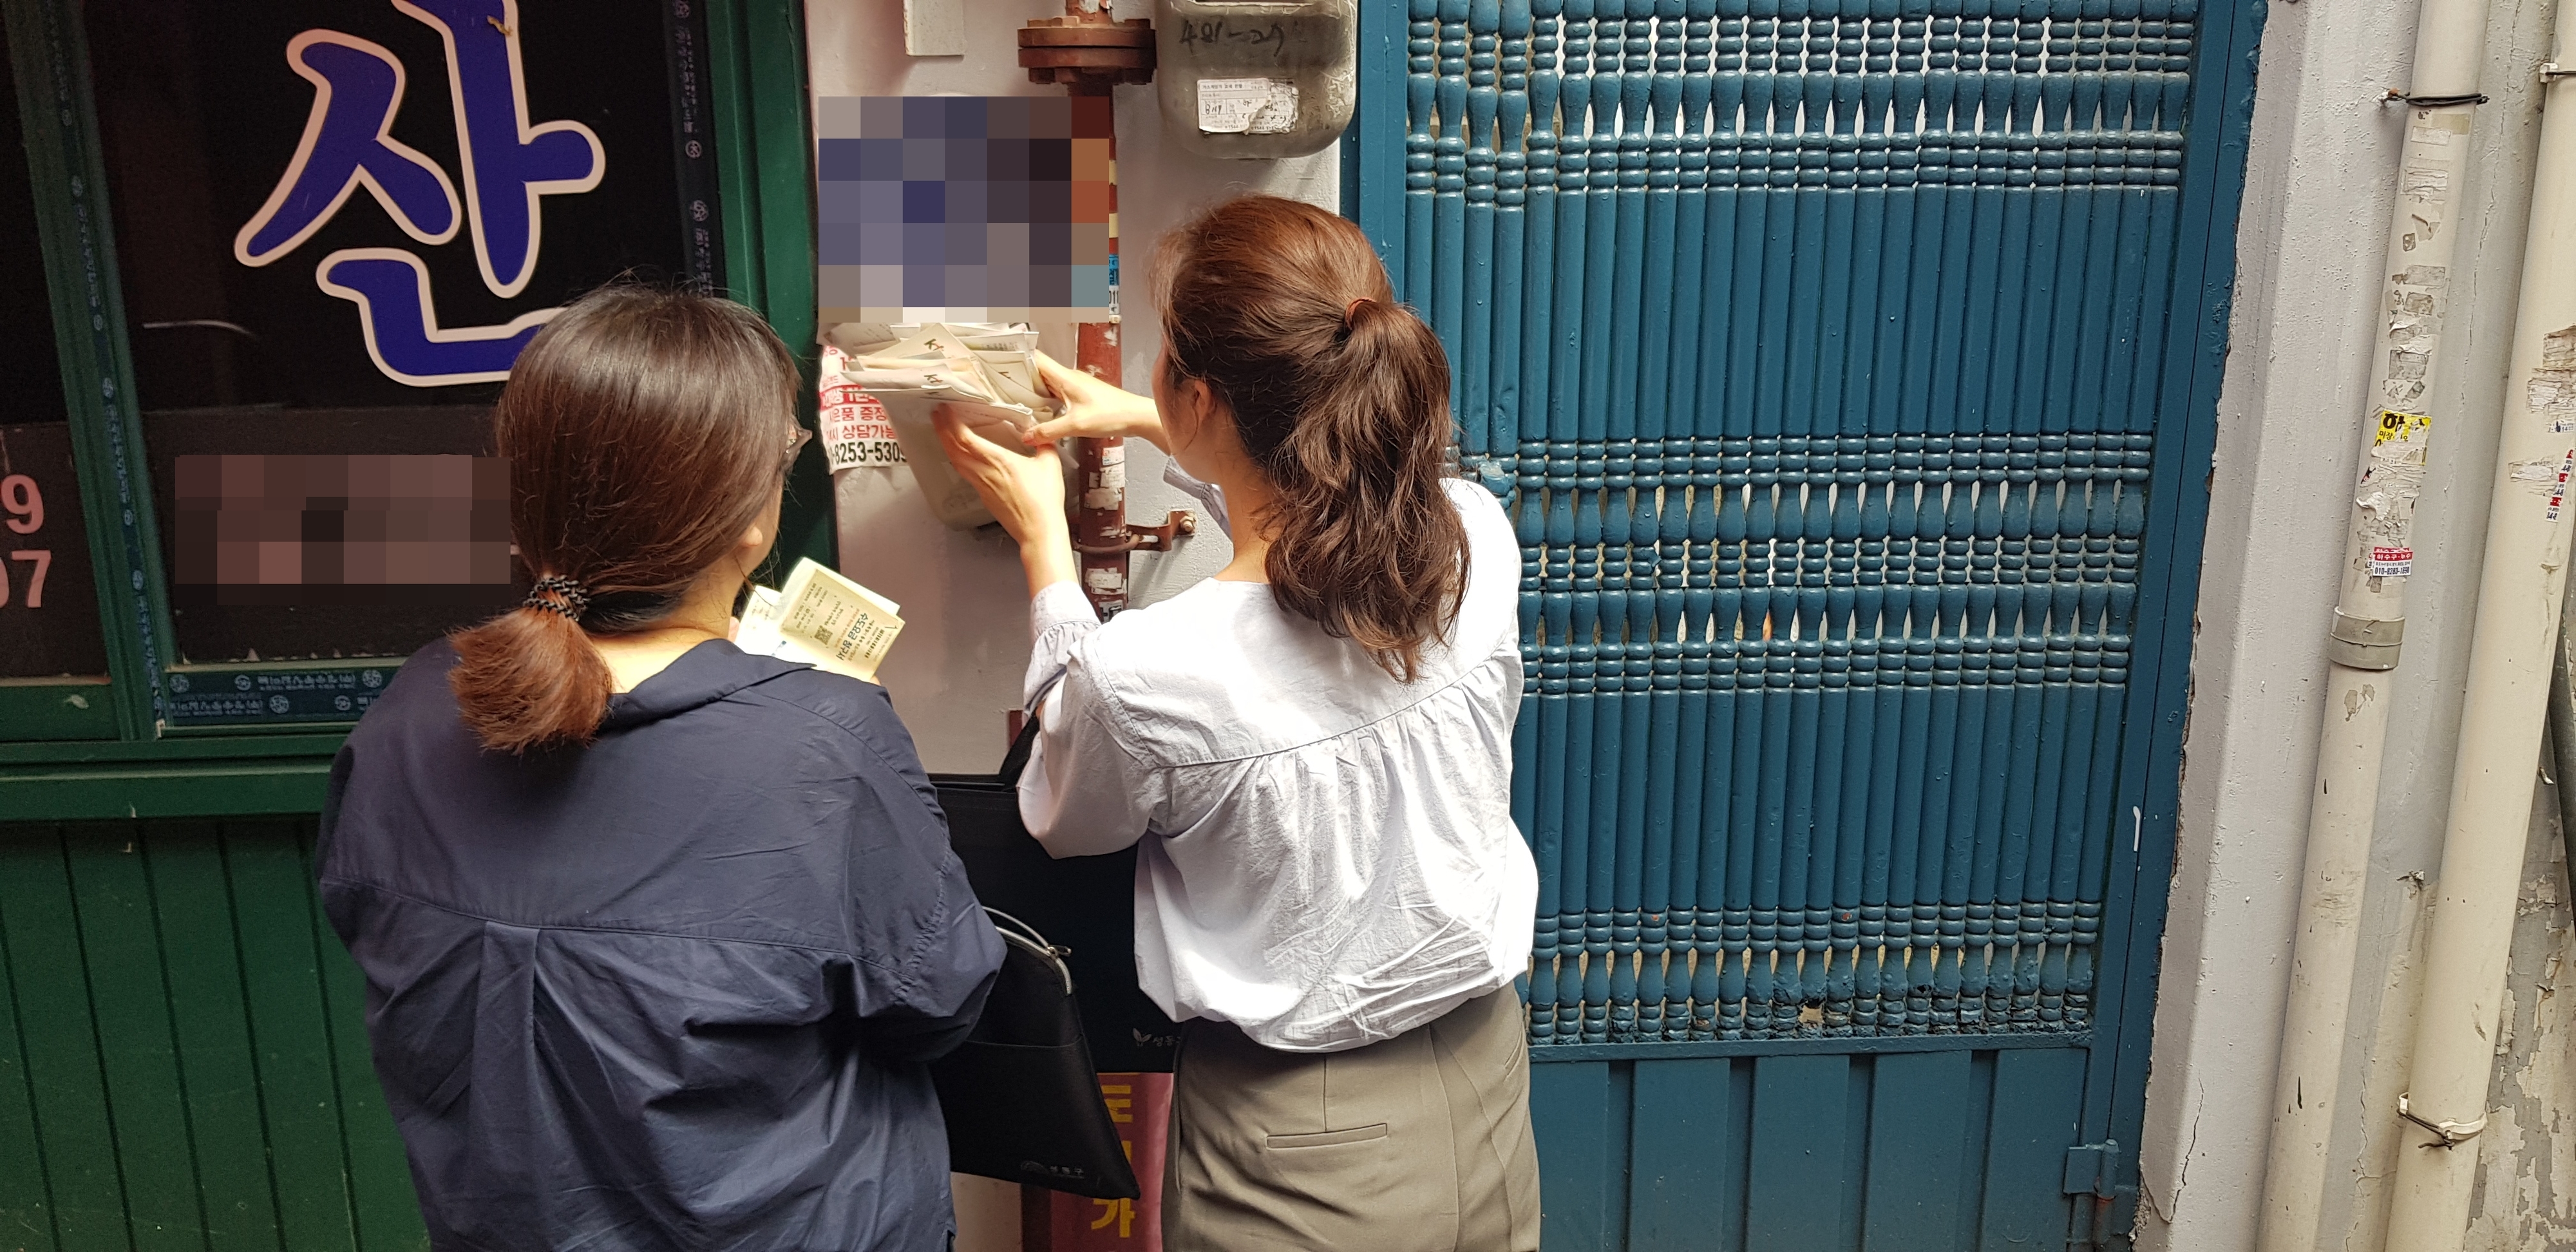 서울 성동구 마장동주민센터 복지팀 공무원들이 지난 5월 30일 위기 의심가구로 분류된 한 다세대주택의 우편함을 확인하고 있다. 카드 고지서, 통신비 명세서 등을 통해 의심가구로 분류된 주민이 실제로 이곳에 사는지를 파악하기 위해서다.  홍인기 기자